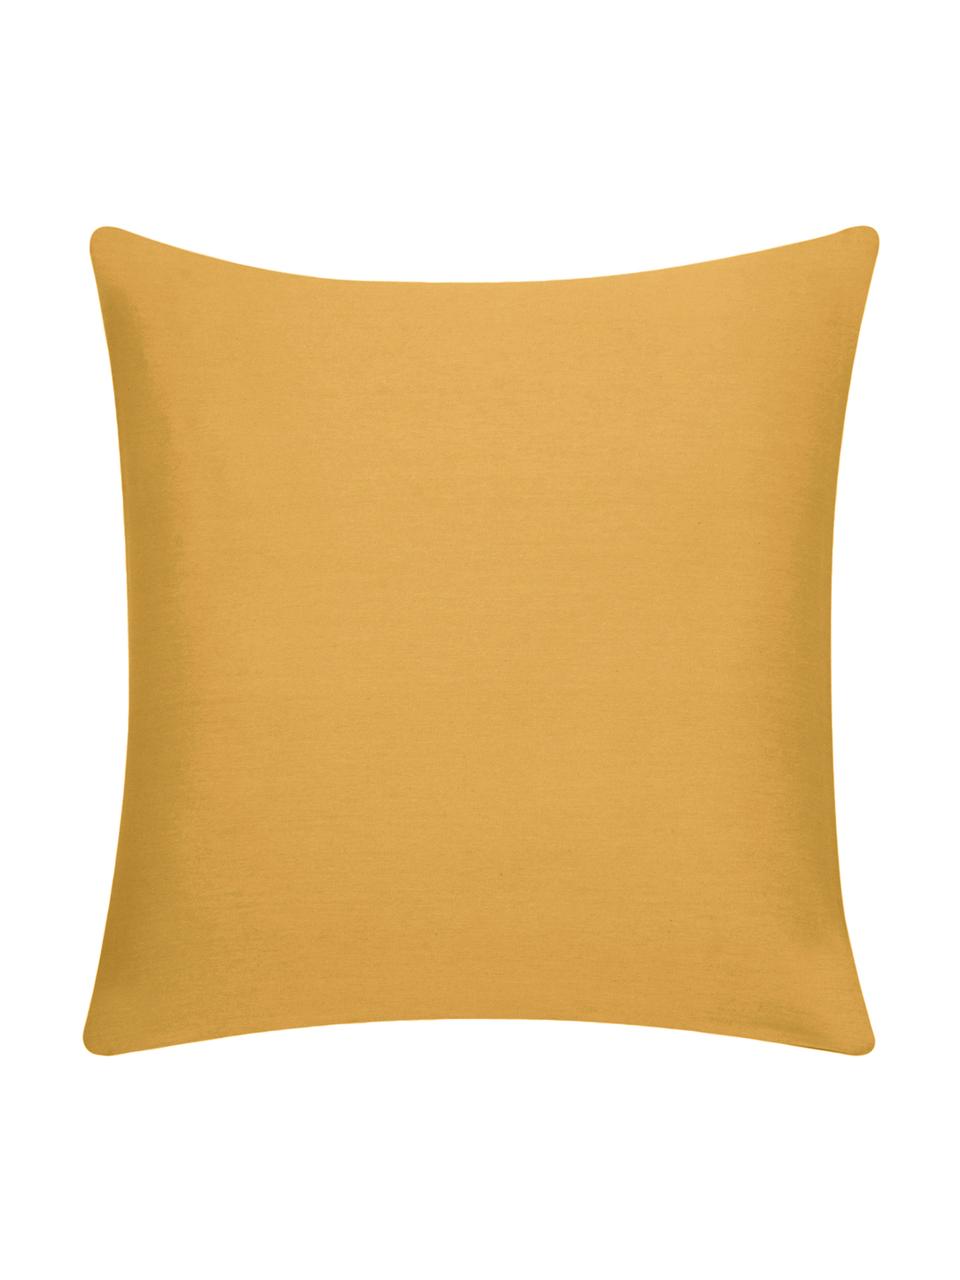 Poszewka na poduszkę z bawełny Mads, 100% bawełna, Musztardowy, S 40 x D 40 cm